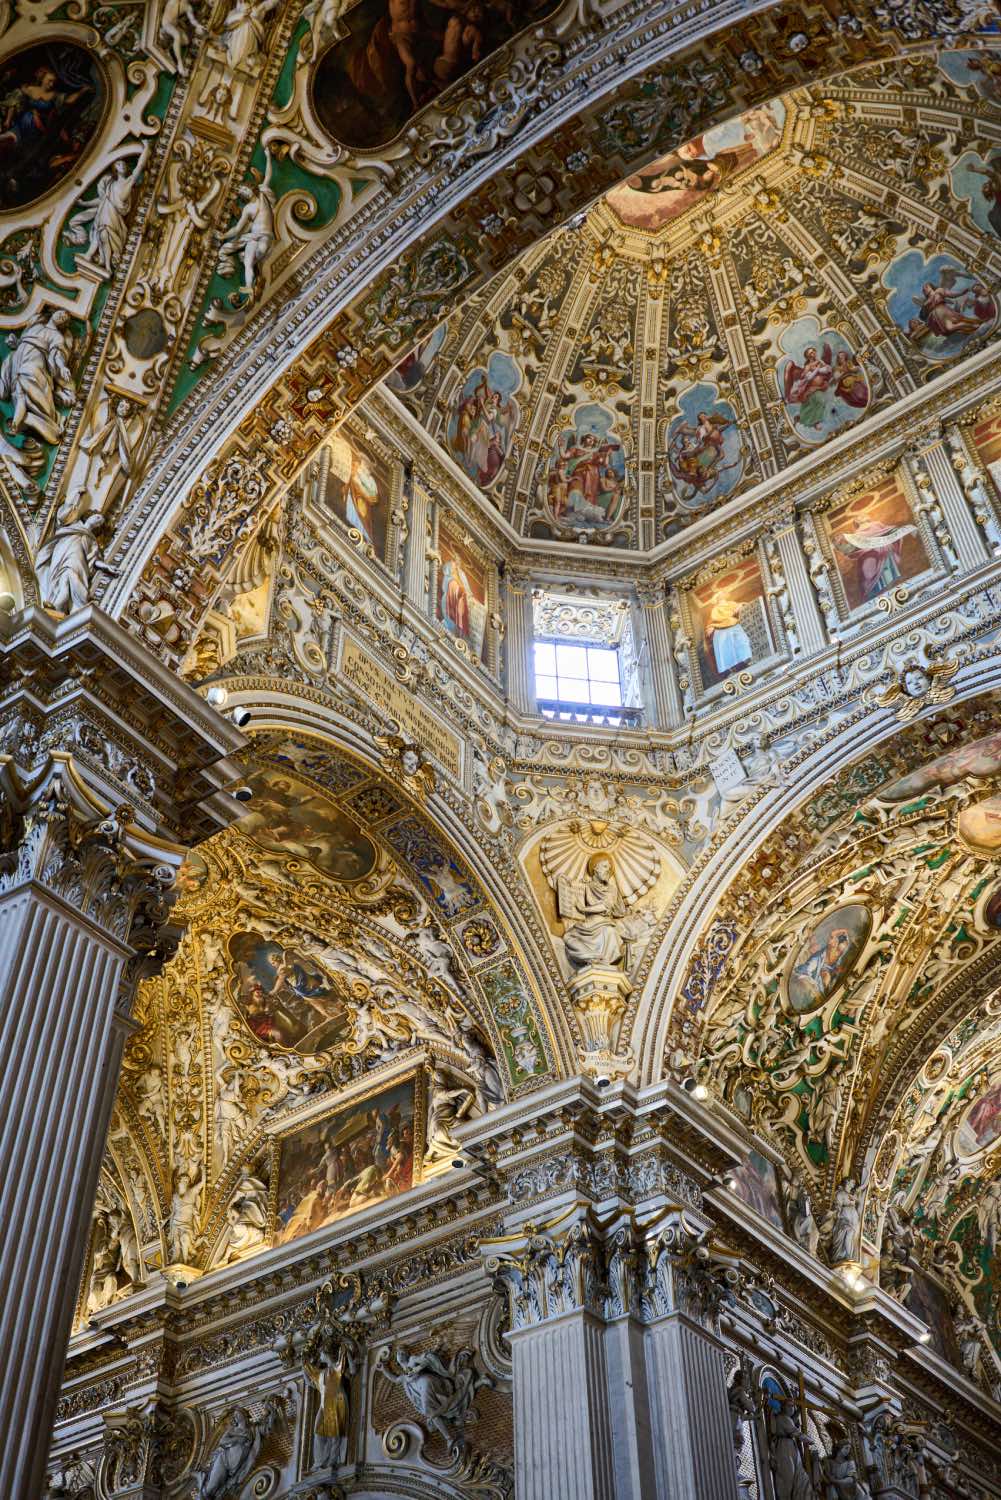 arquitectura barroca religiosa italiana: iglesia santa maria maggiore de bergamo